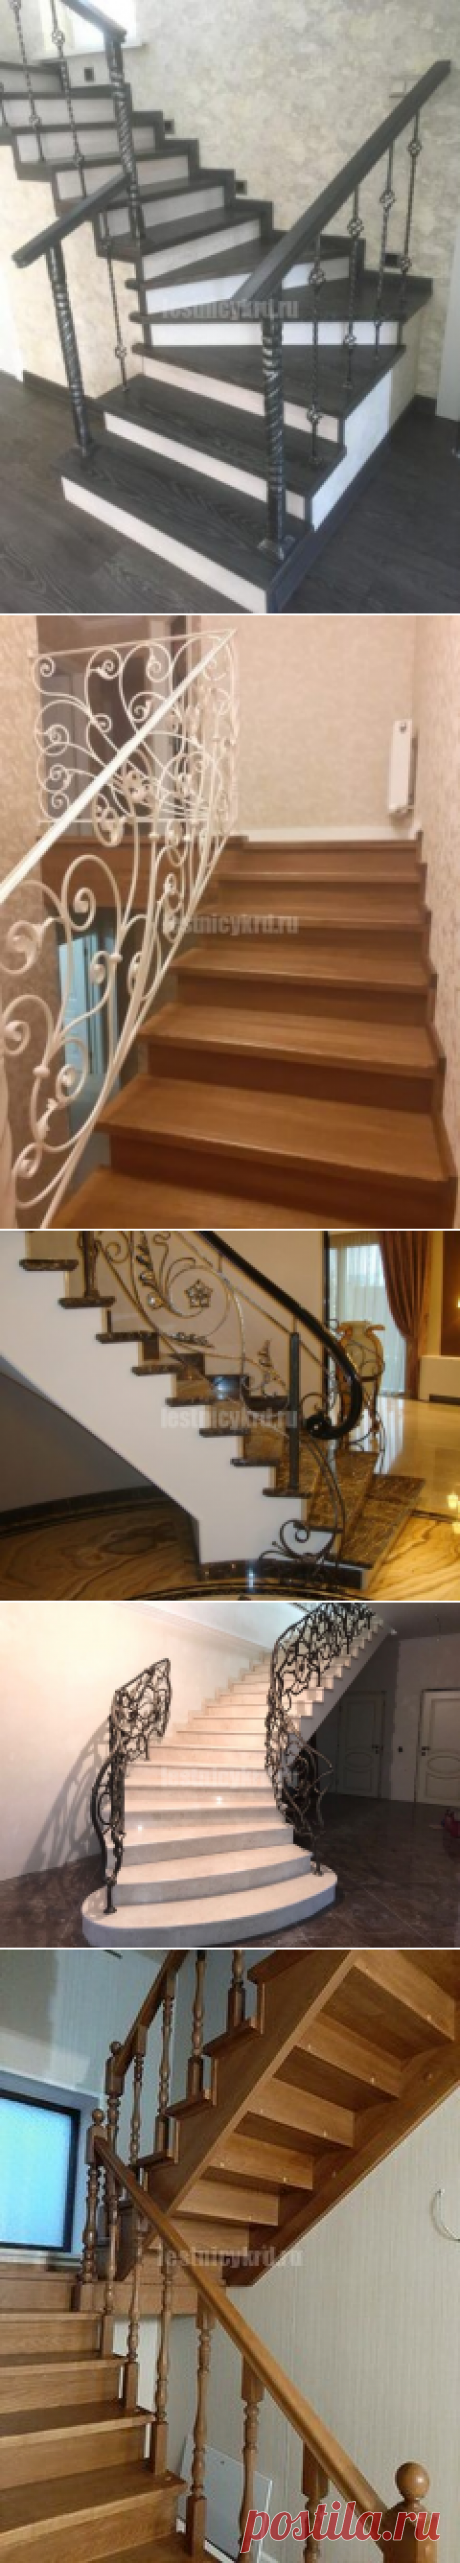 Деревянные лестницы с коваными ограждениями - Лестницы Краснодара